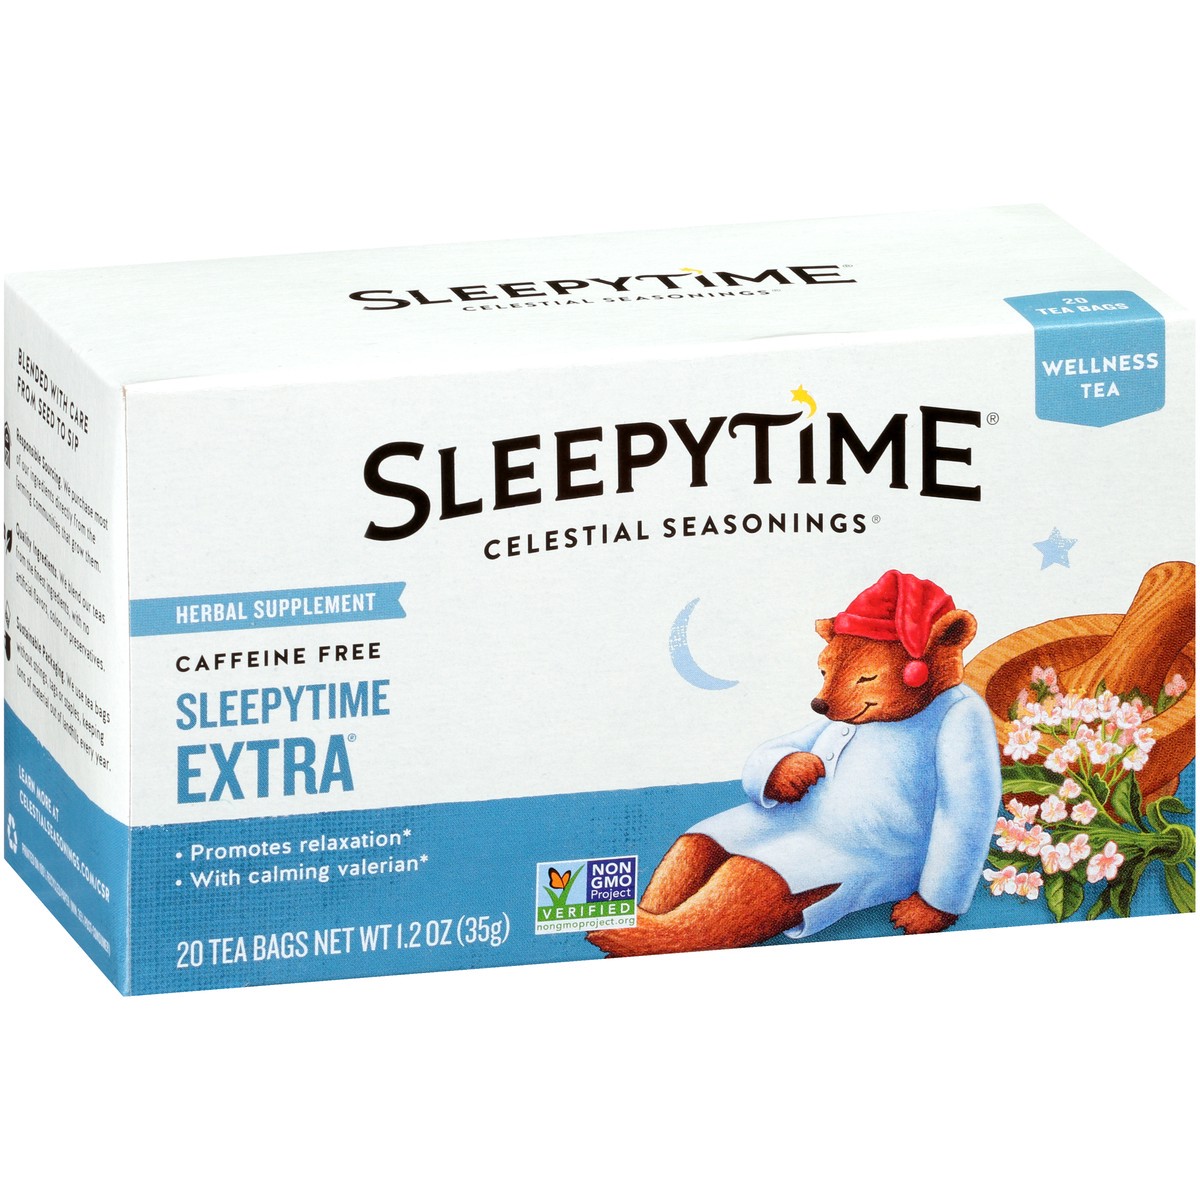 slide 1 of 31, Celestial Seasonings Sleepytime Extra Caffeine Free Herbal Supplement Tea Bags 20 ct Box, 1.2 oz